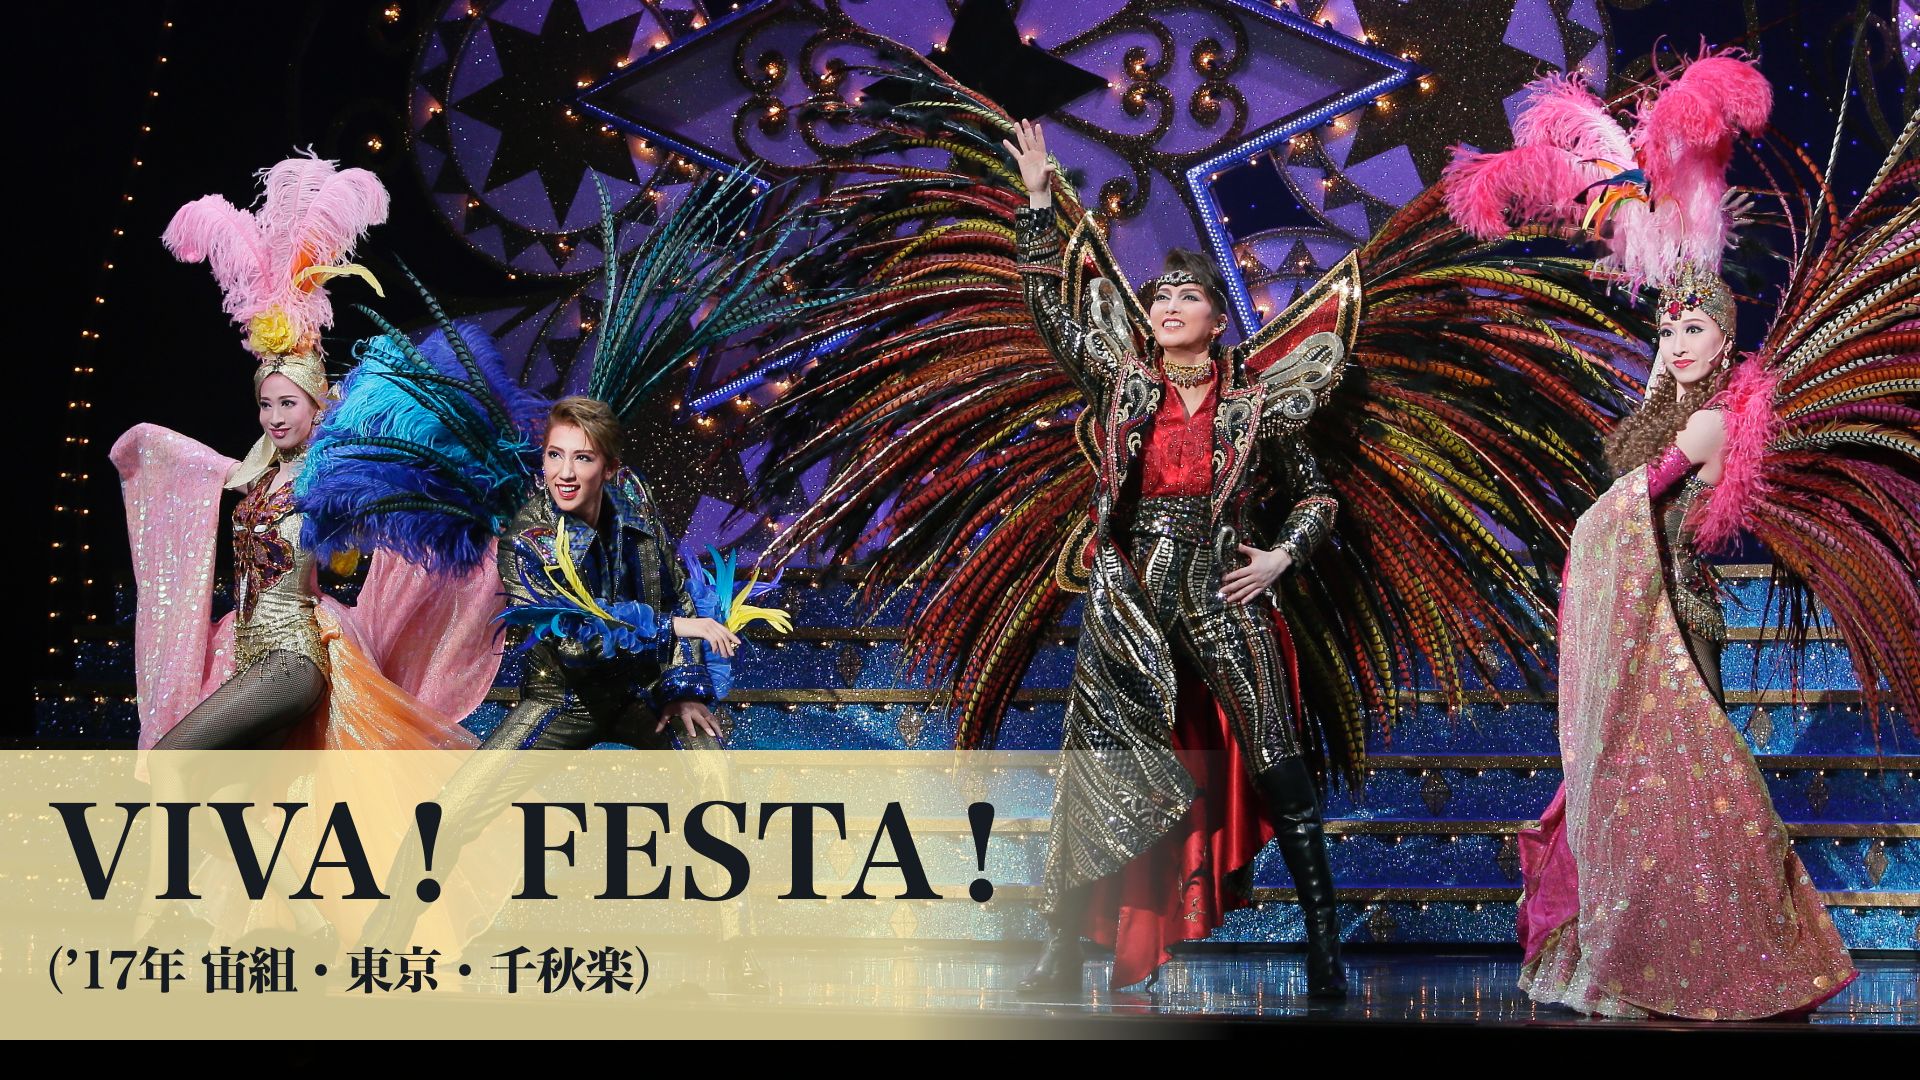 宝塚歌劇 VIVA! FESTA!('17年宙組・東京・千秋楽)